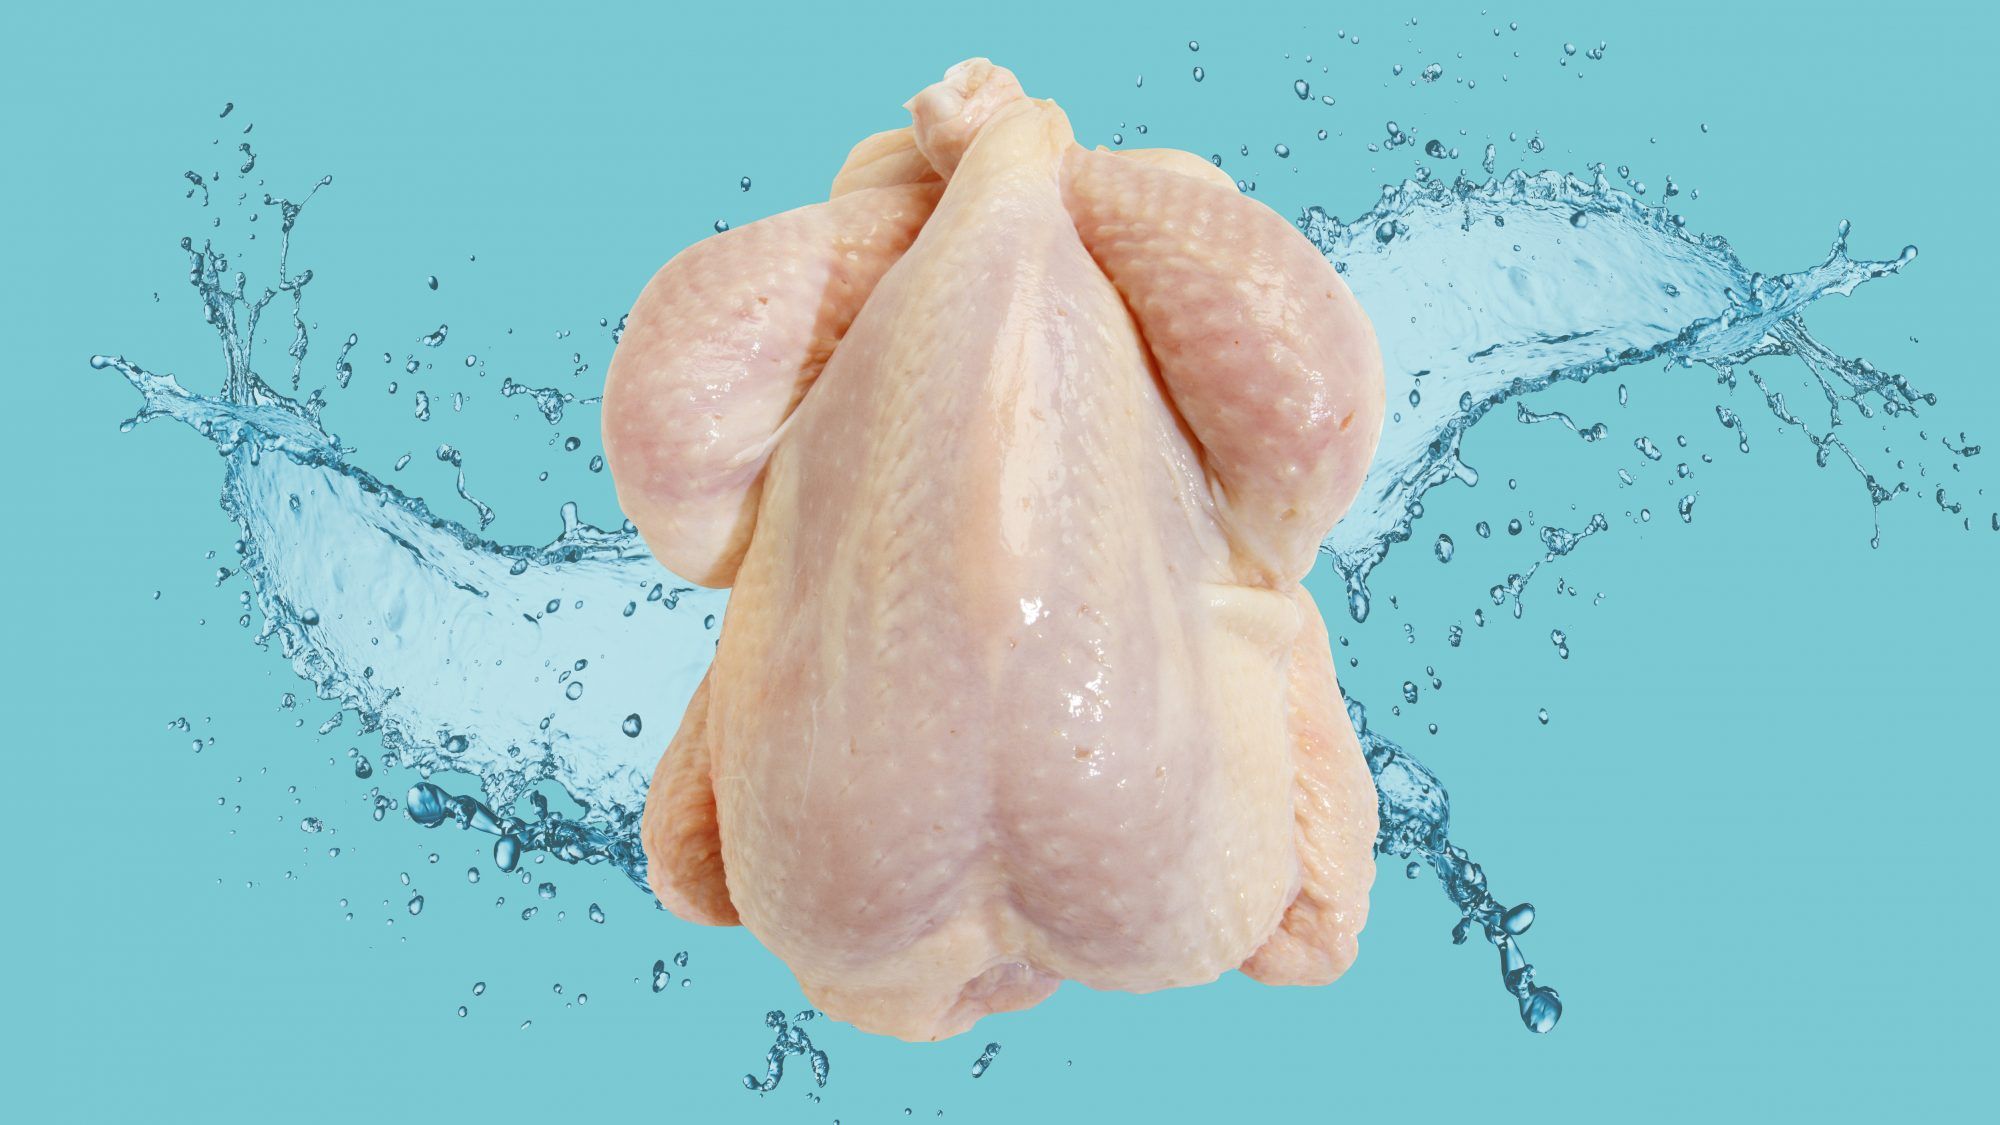 Този метод за приготвяне на пиле е основно кошмар за безопасност на храните